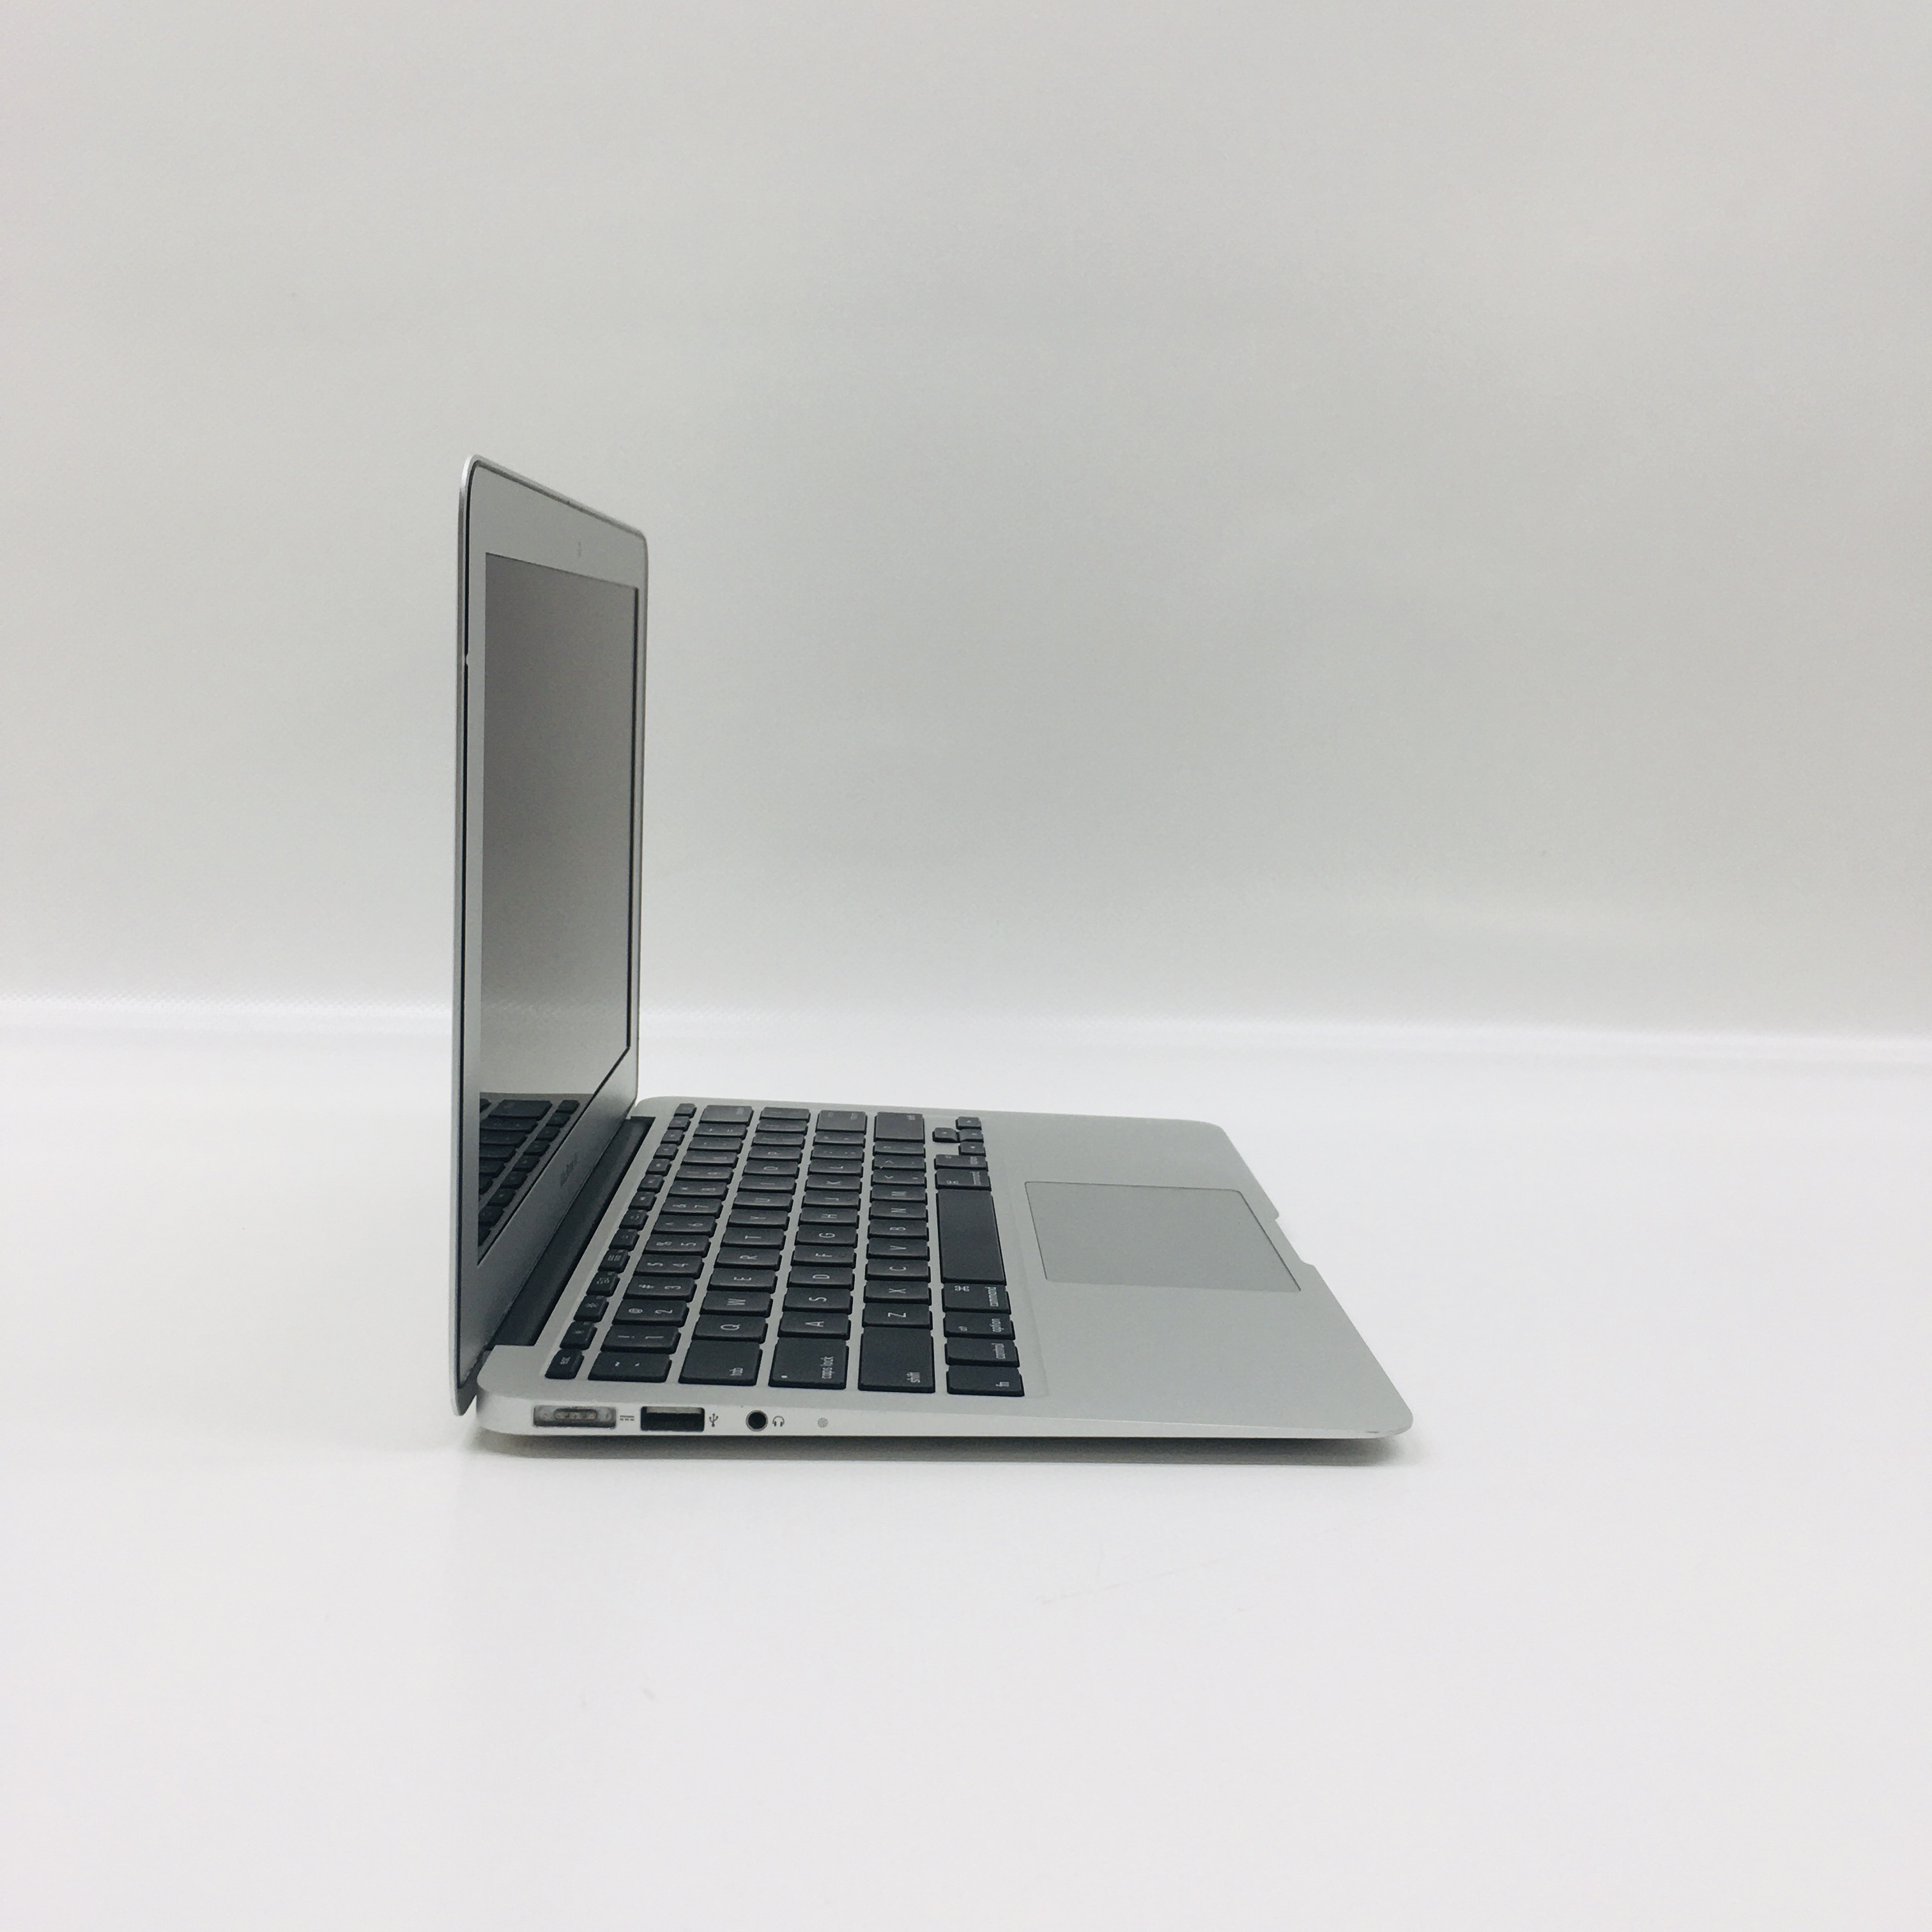 MacBook Air 11" Mid 2012 (Intel Core i5 1.7 GHz 4 GB RAM 128 GB SSD), Intel Core i5 1.7 GHz, 4 GB RAM, 128 GB SSD, image 2